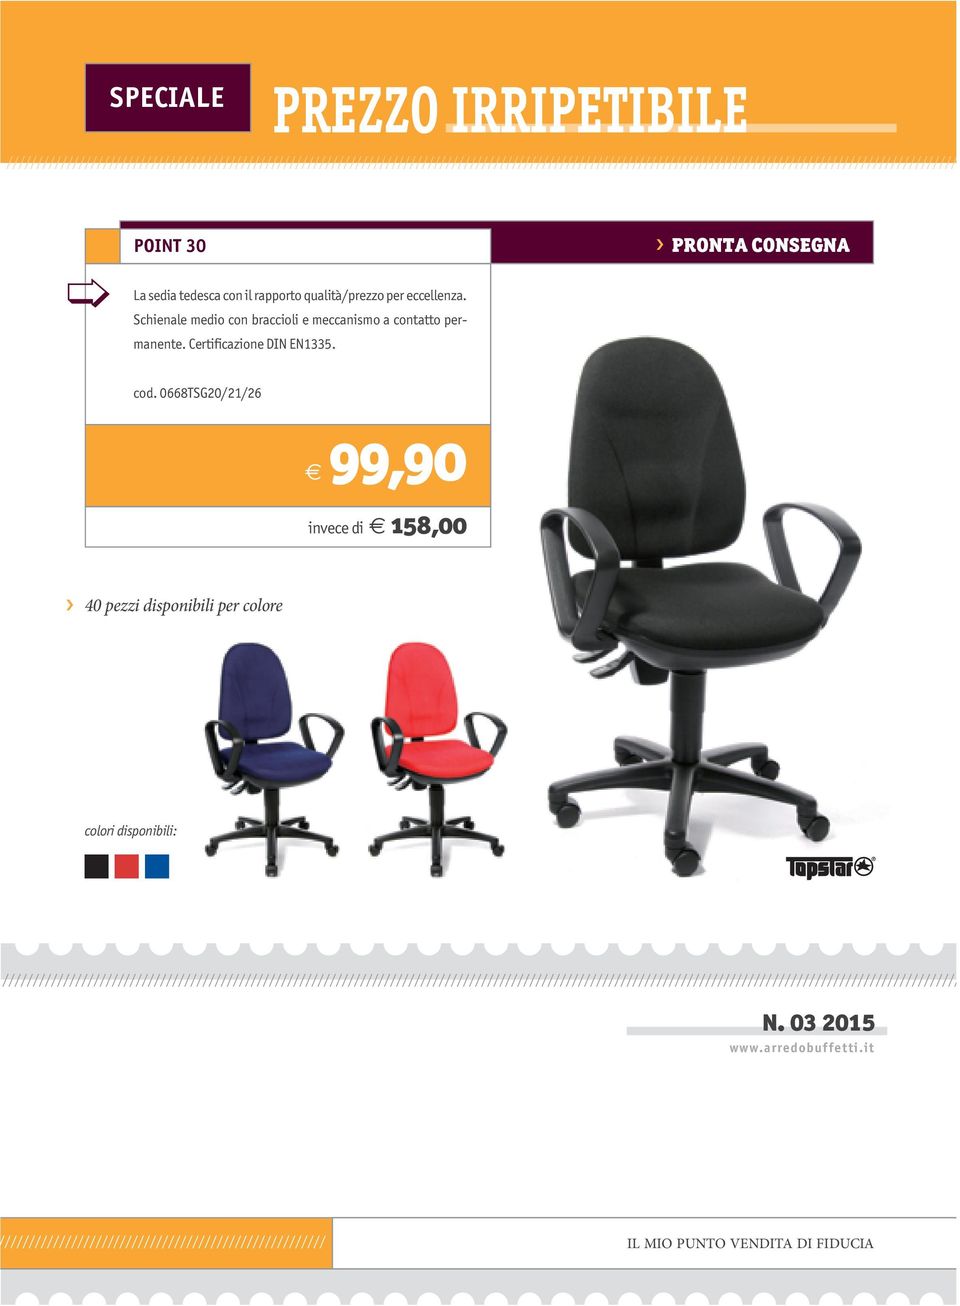 La sedia tedesca con il rapporto qualità/prezzo per eccellenza. Schienale medio con braccioli e meccanismo a contatto permanente. Certificazione DIN EN1335. cod.